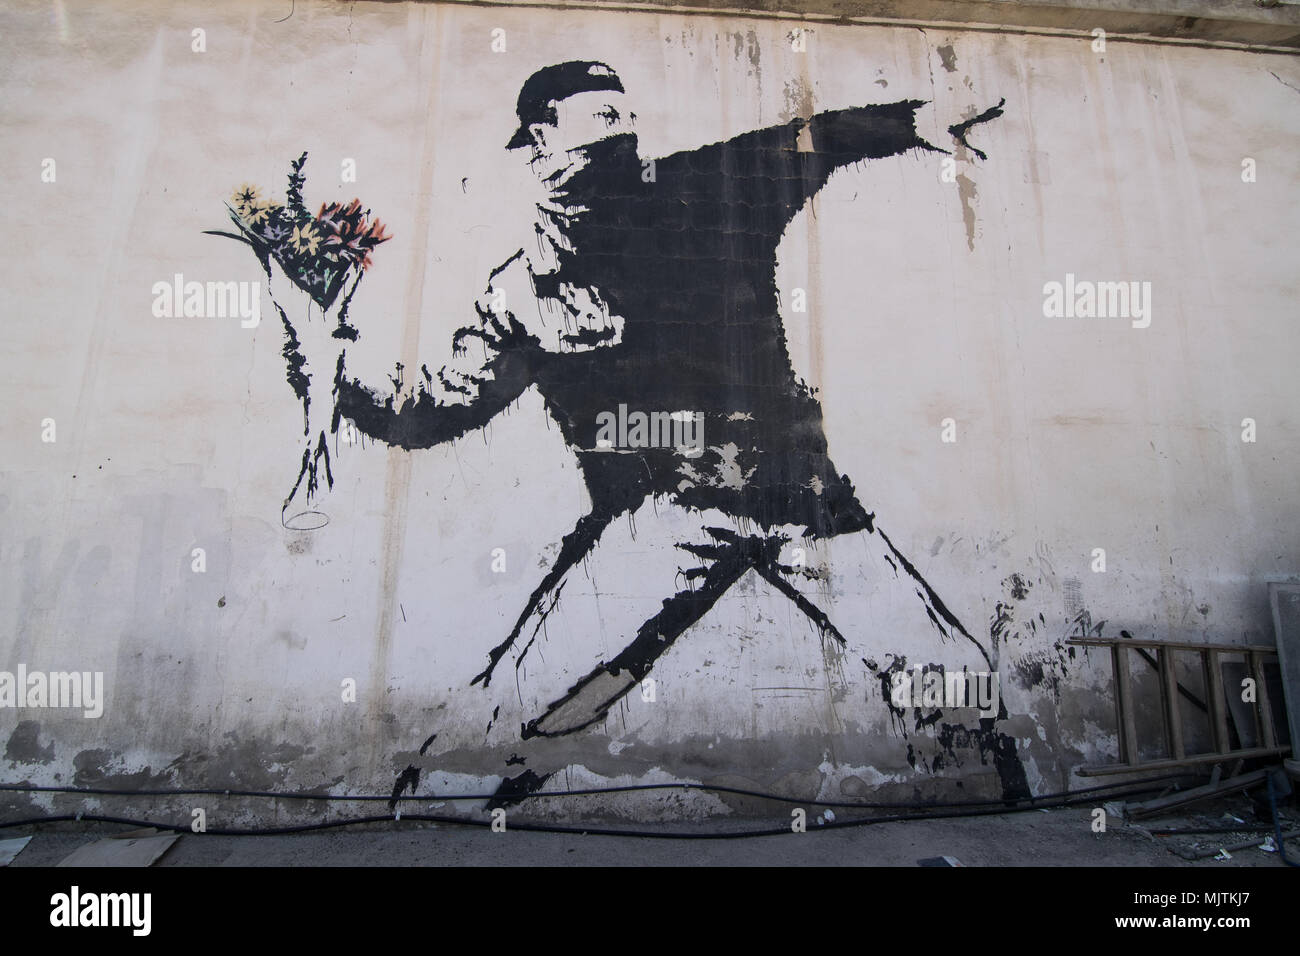 La célèbre fresque de Banksy 'rage, le lanceur de fleurs (l'amour est dans l'air)' qui est peinte sur un lavage de voiture dans une banlieue de Betlehem (Palestine) Banque D'Images